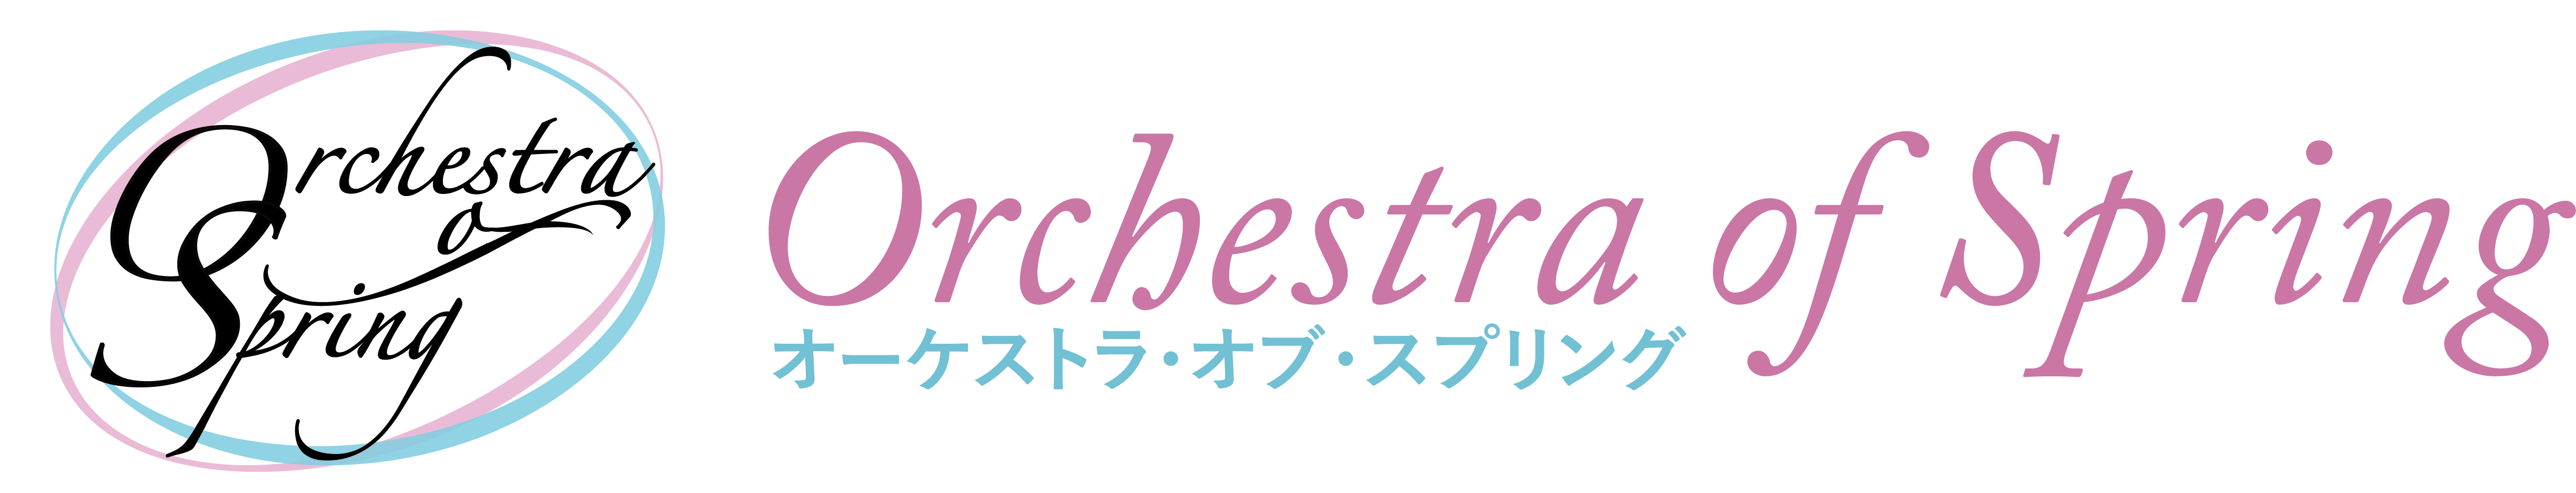 Orchestra of Spring《春オケ》| 東京近郊で活動するアマチュアオーケストラ